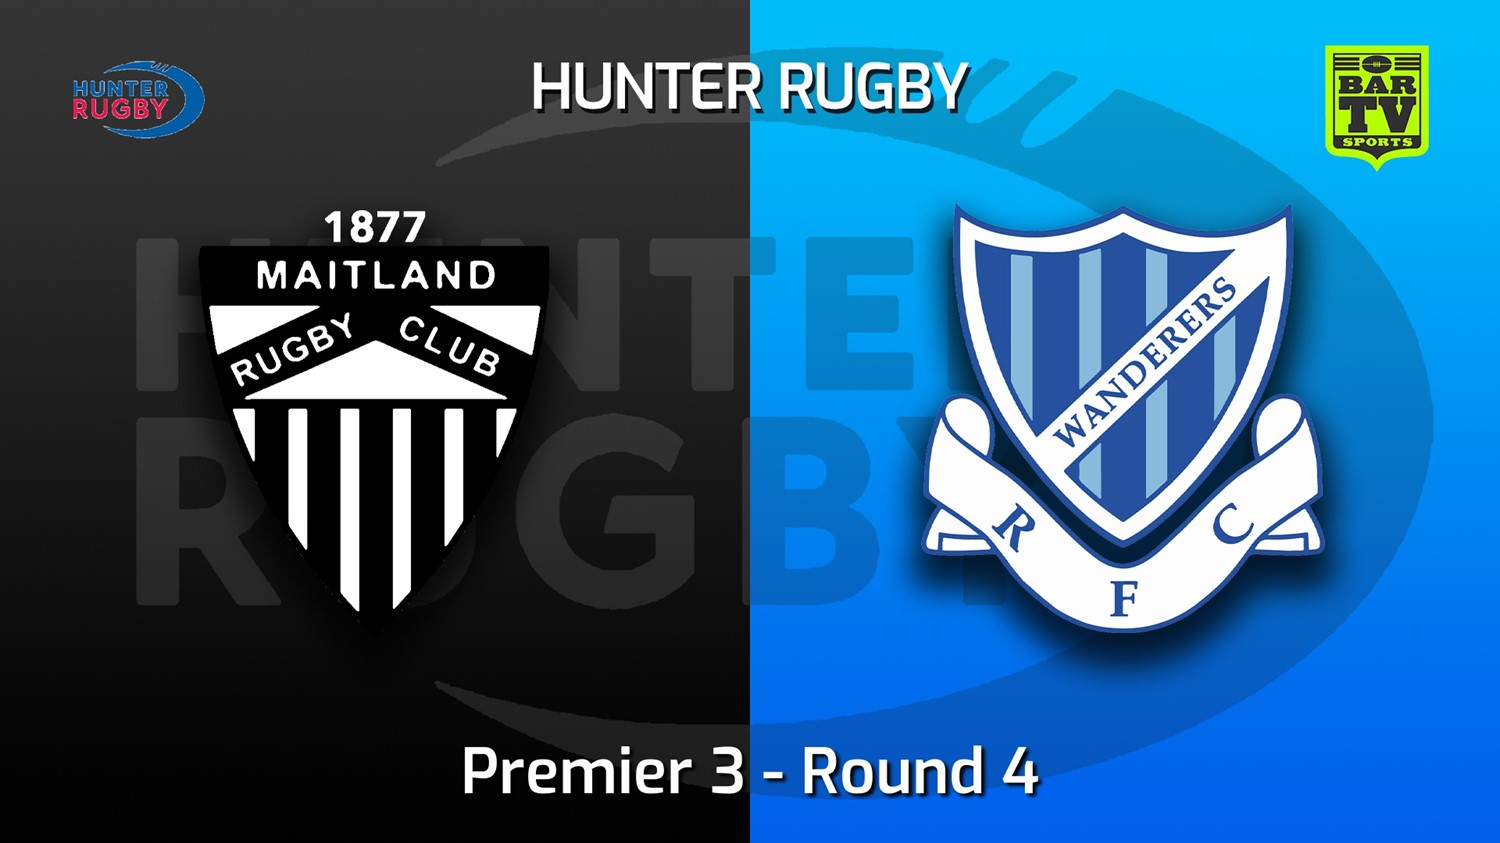 220514-Hunter Rugby Round 4 - Premier 3 - Maitland v Wanderers Slate Image